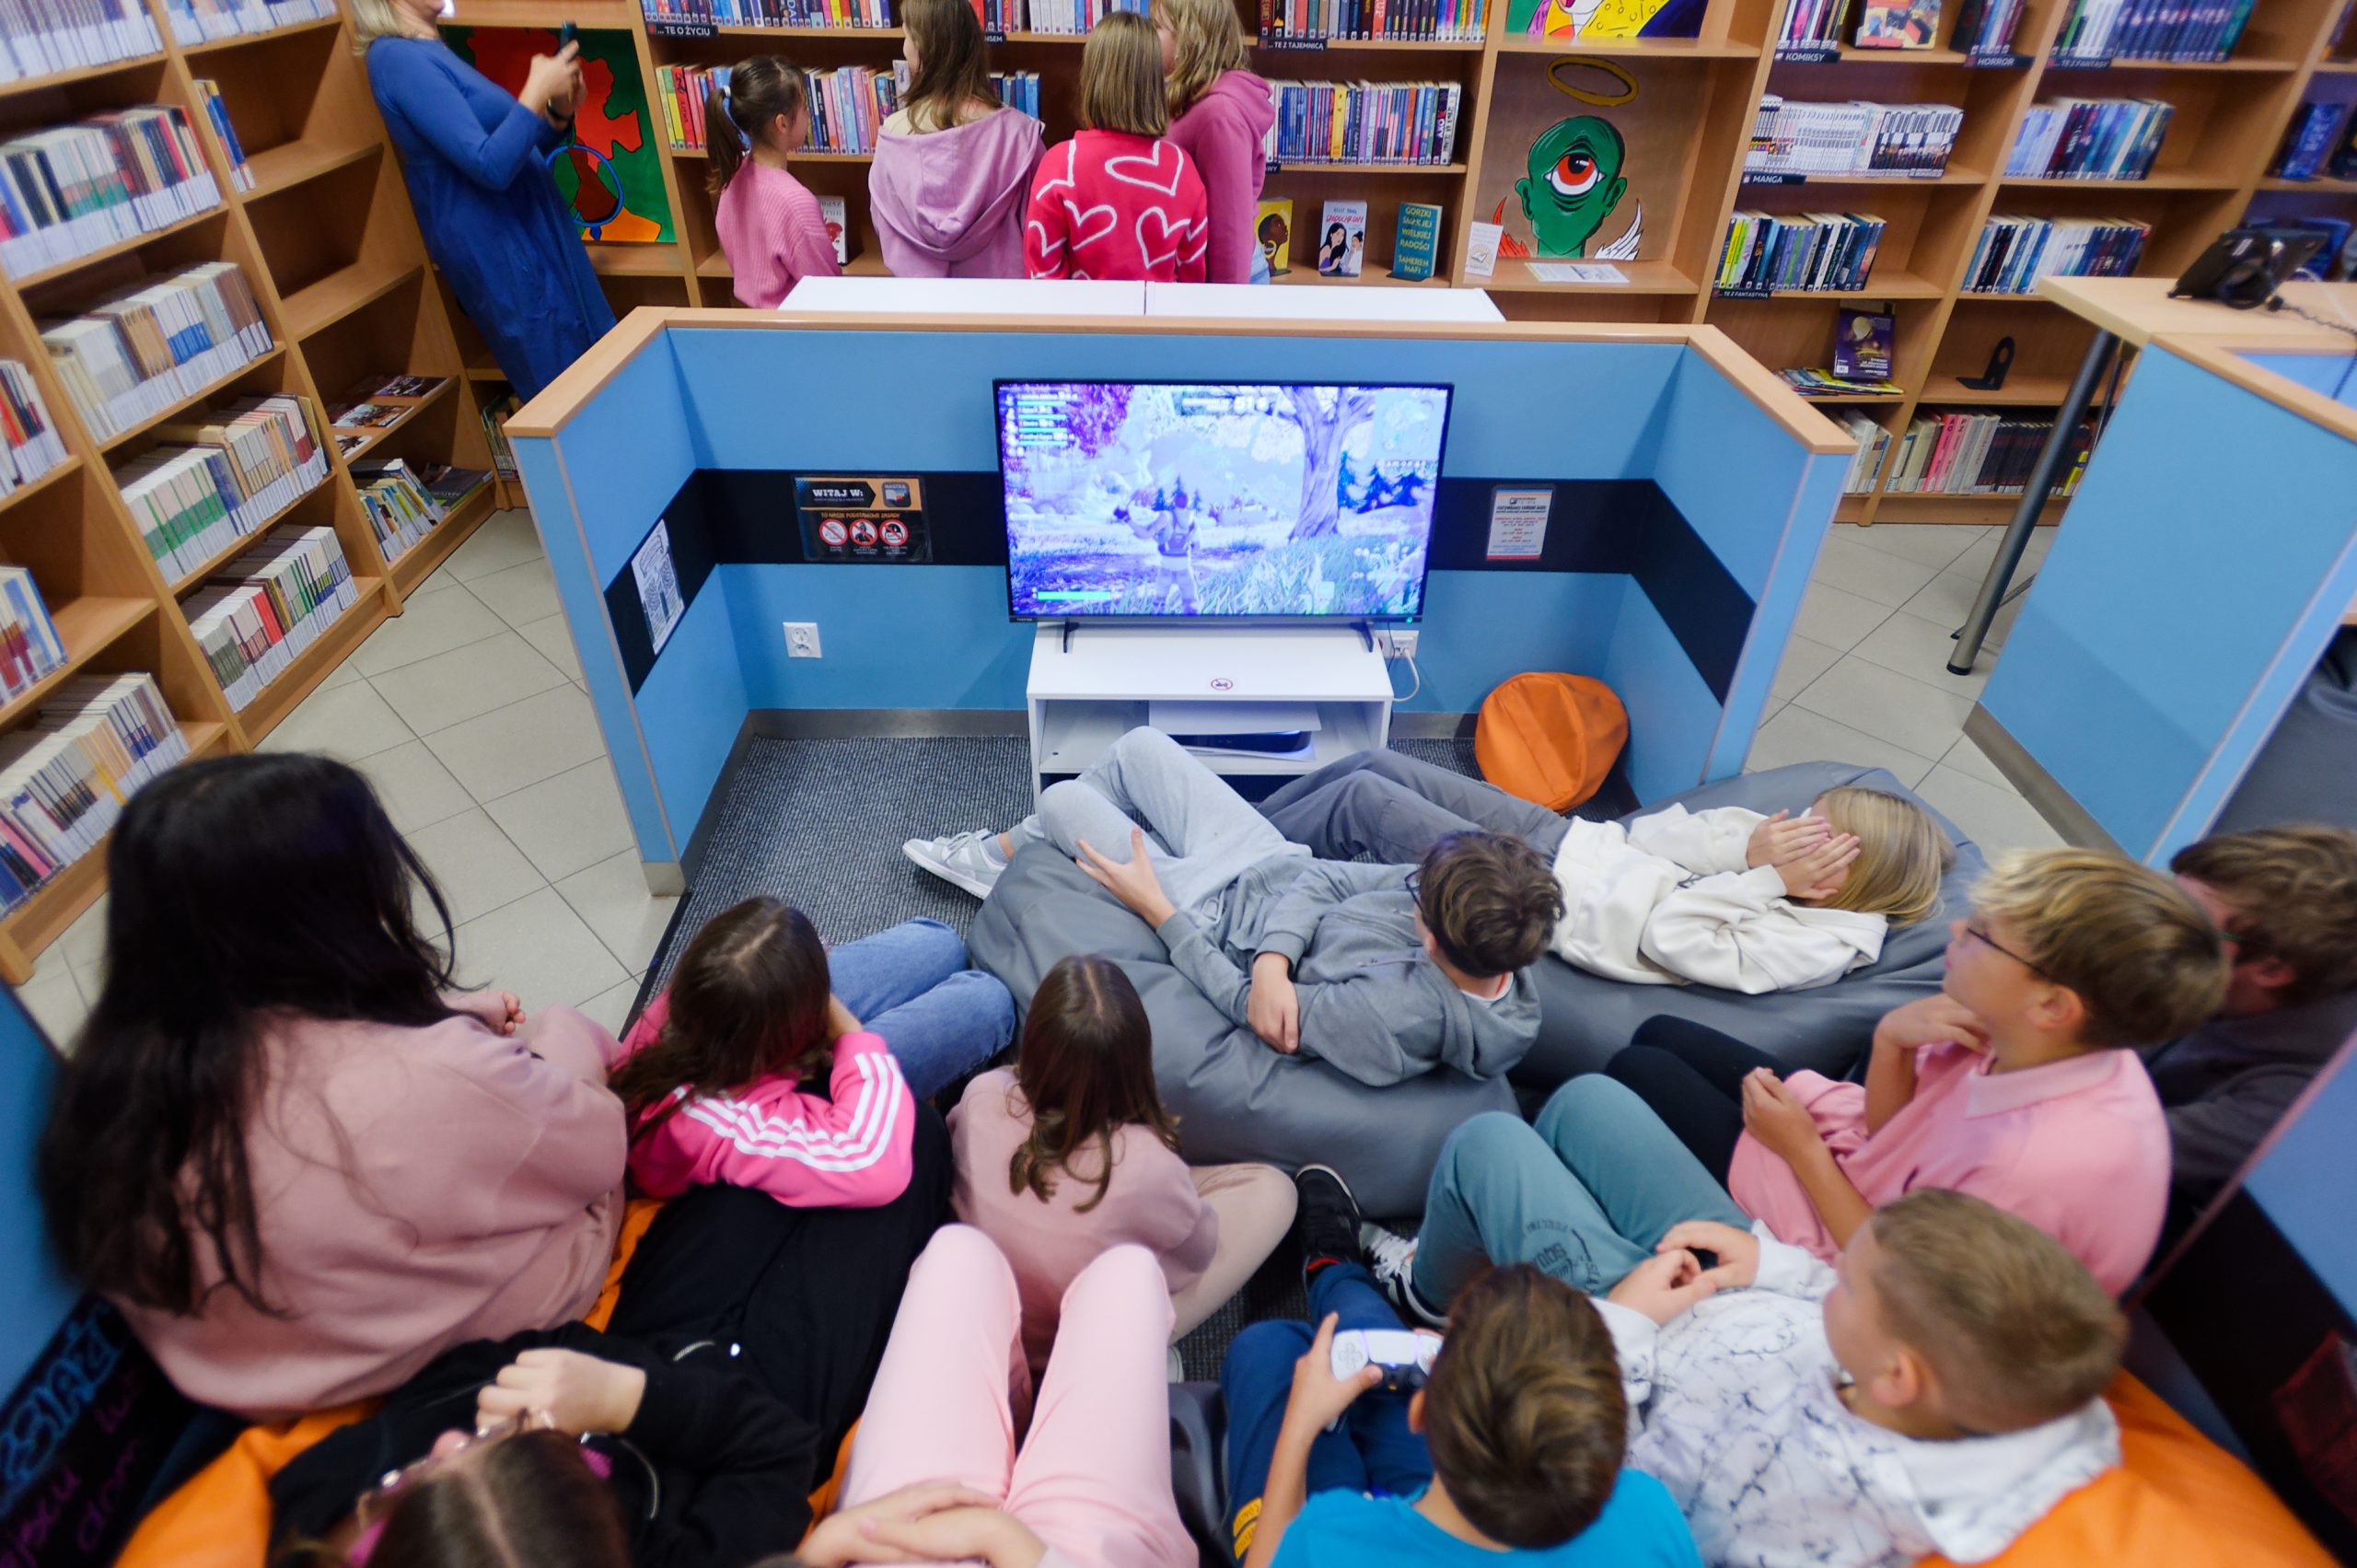 Grupa nastolatków siedząca przed telewizorem, w tle osoby stojące przy regałach z książkami.